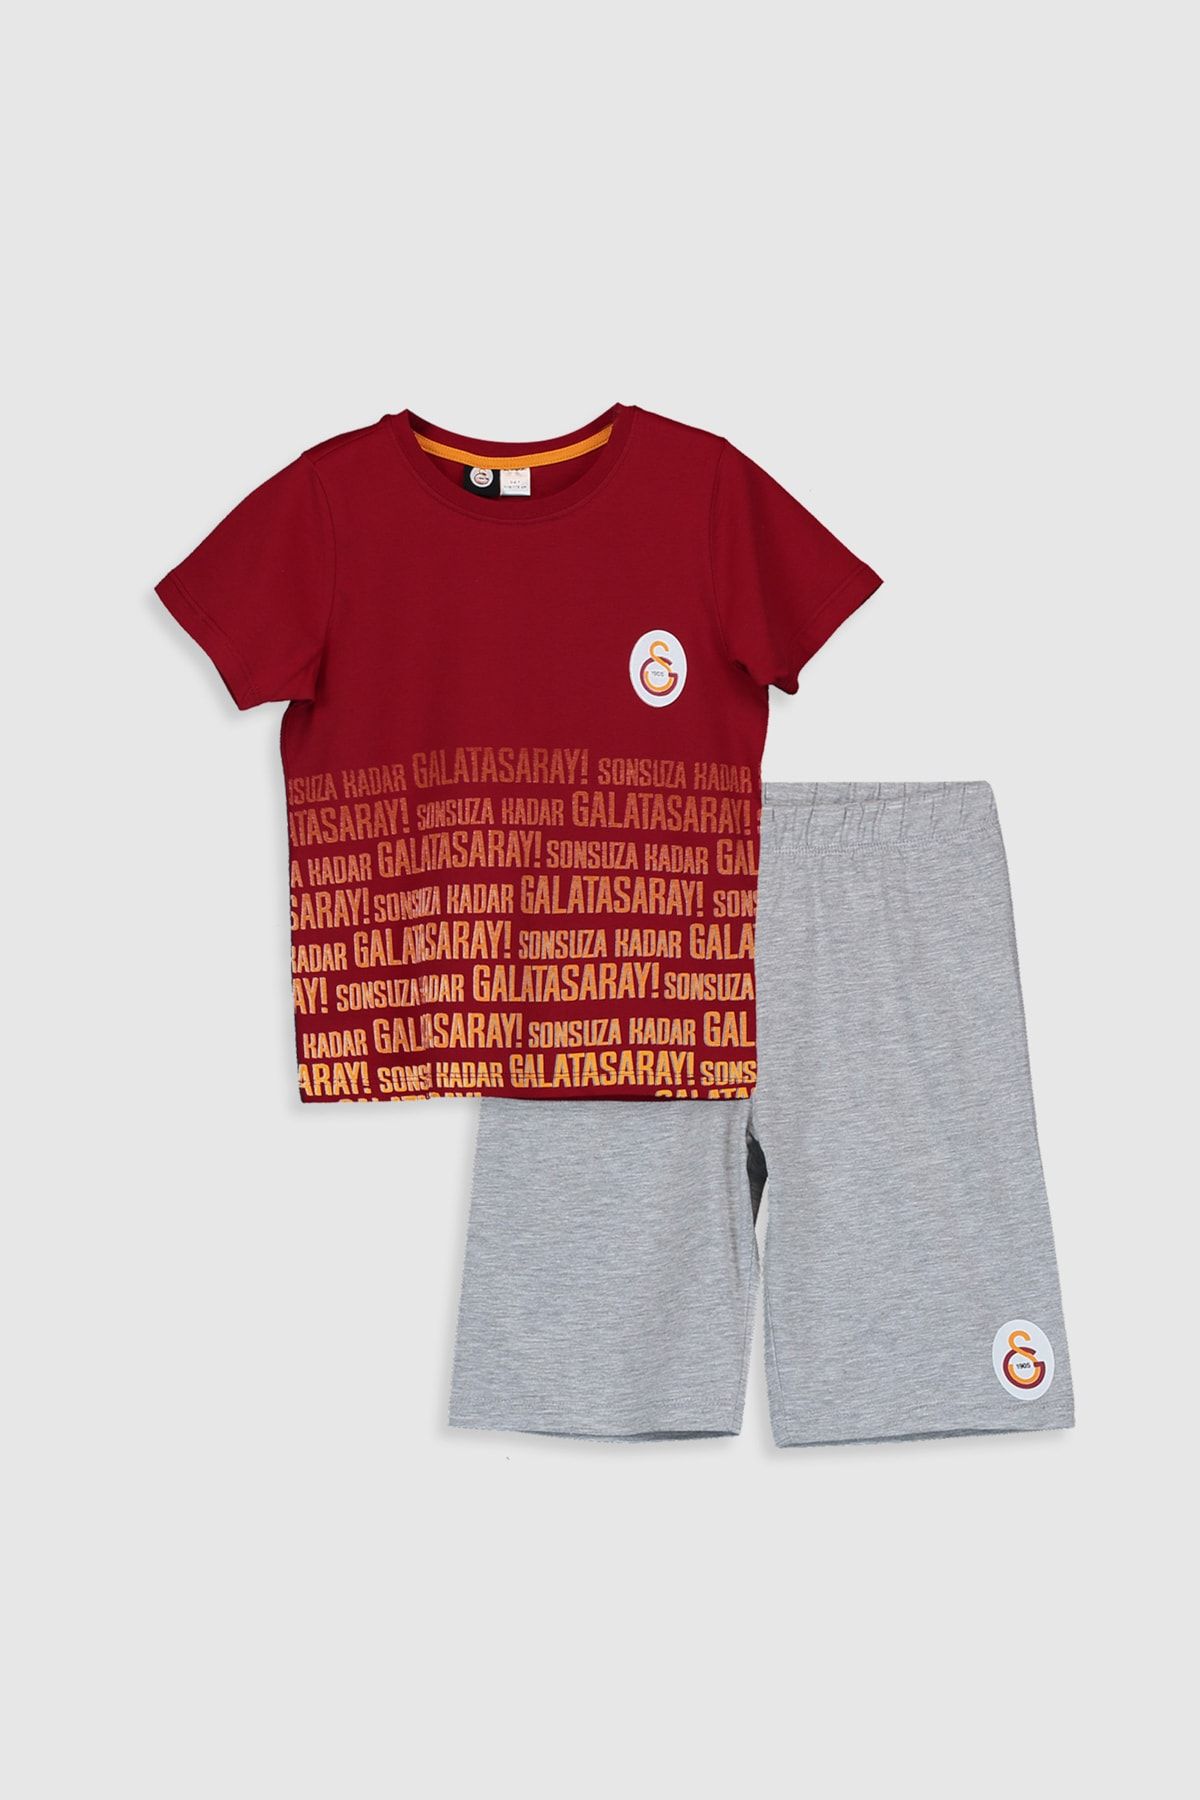 Galatasaray Galatasaray Erkek Çocuk Kırmızı J4N Pijama Takımı